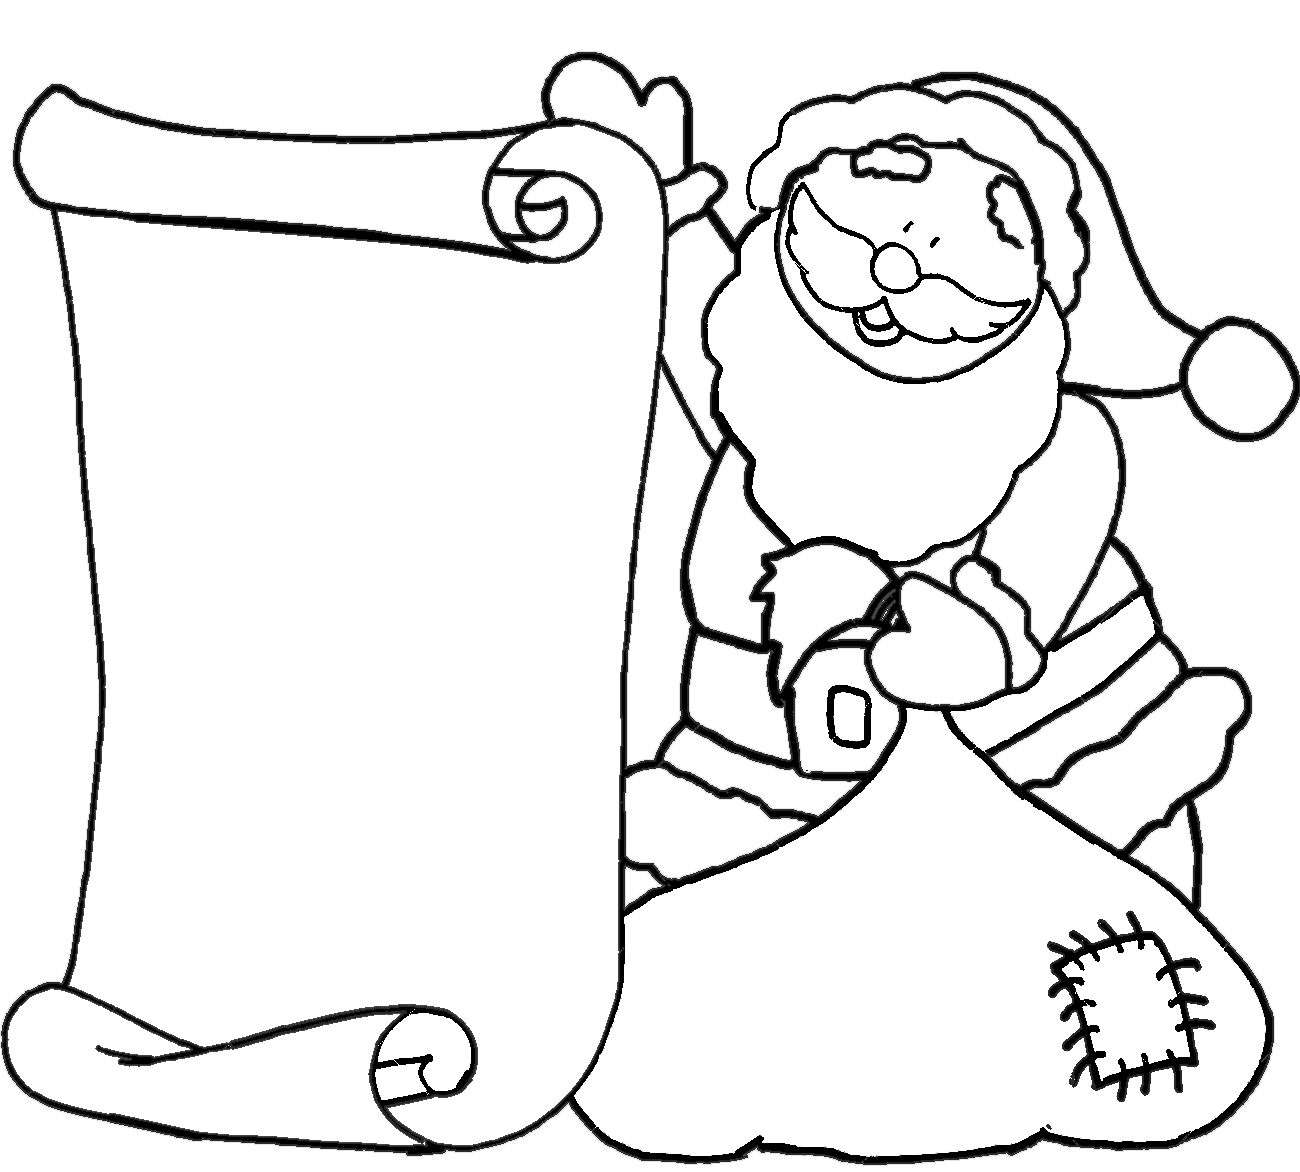 Santa Image For Children